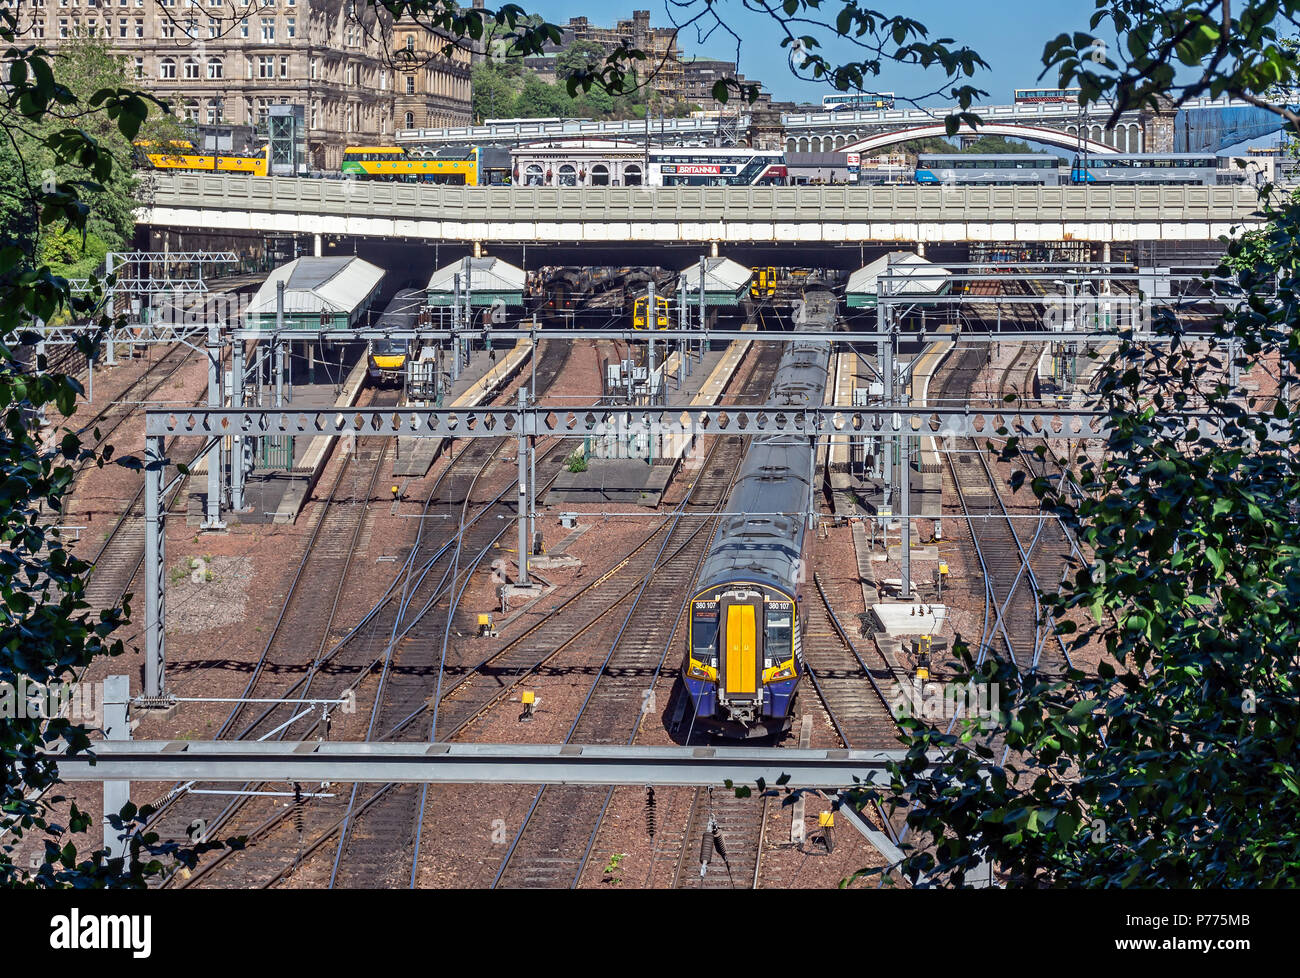 Elektrischer Triebzug Klasse 380 Ankunft am Bahnhof Waverley in Edinburgh Schottland Großbritannien von Glasgow Stockfoto